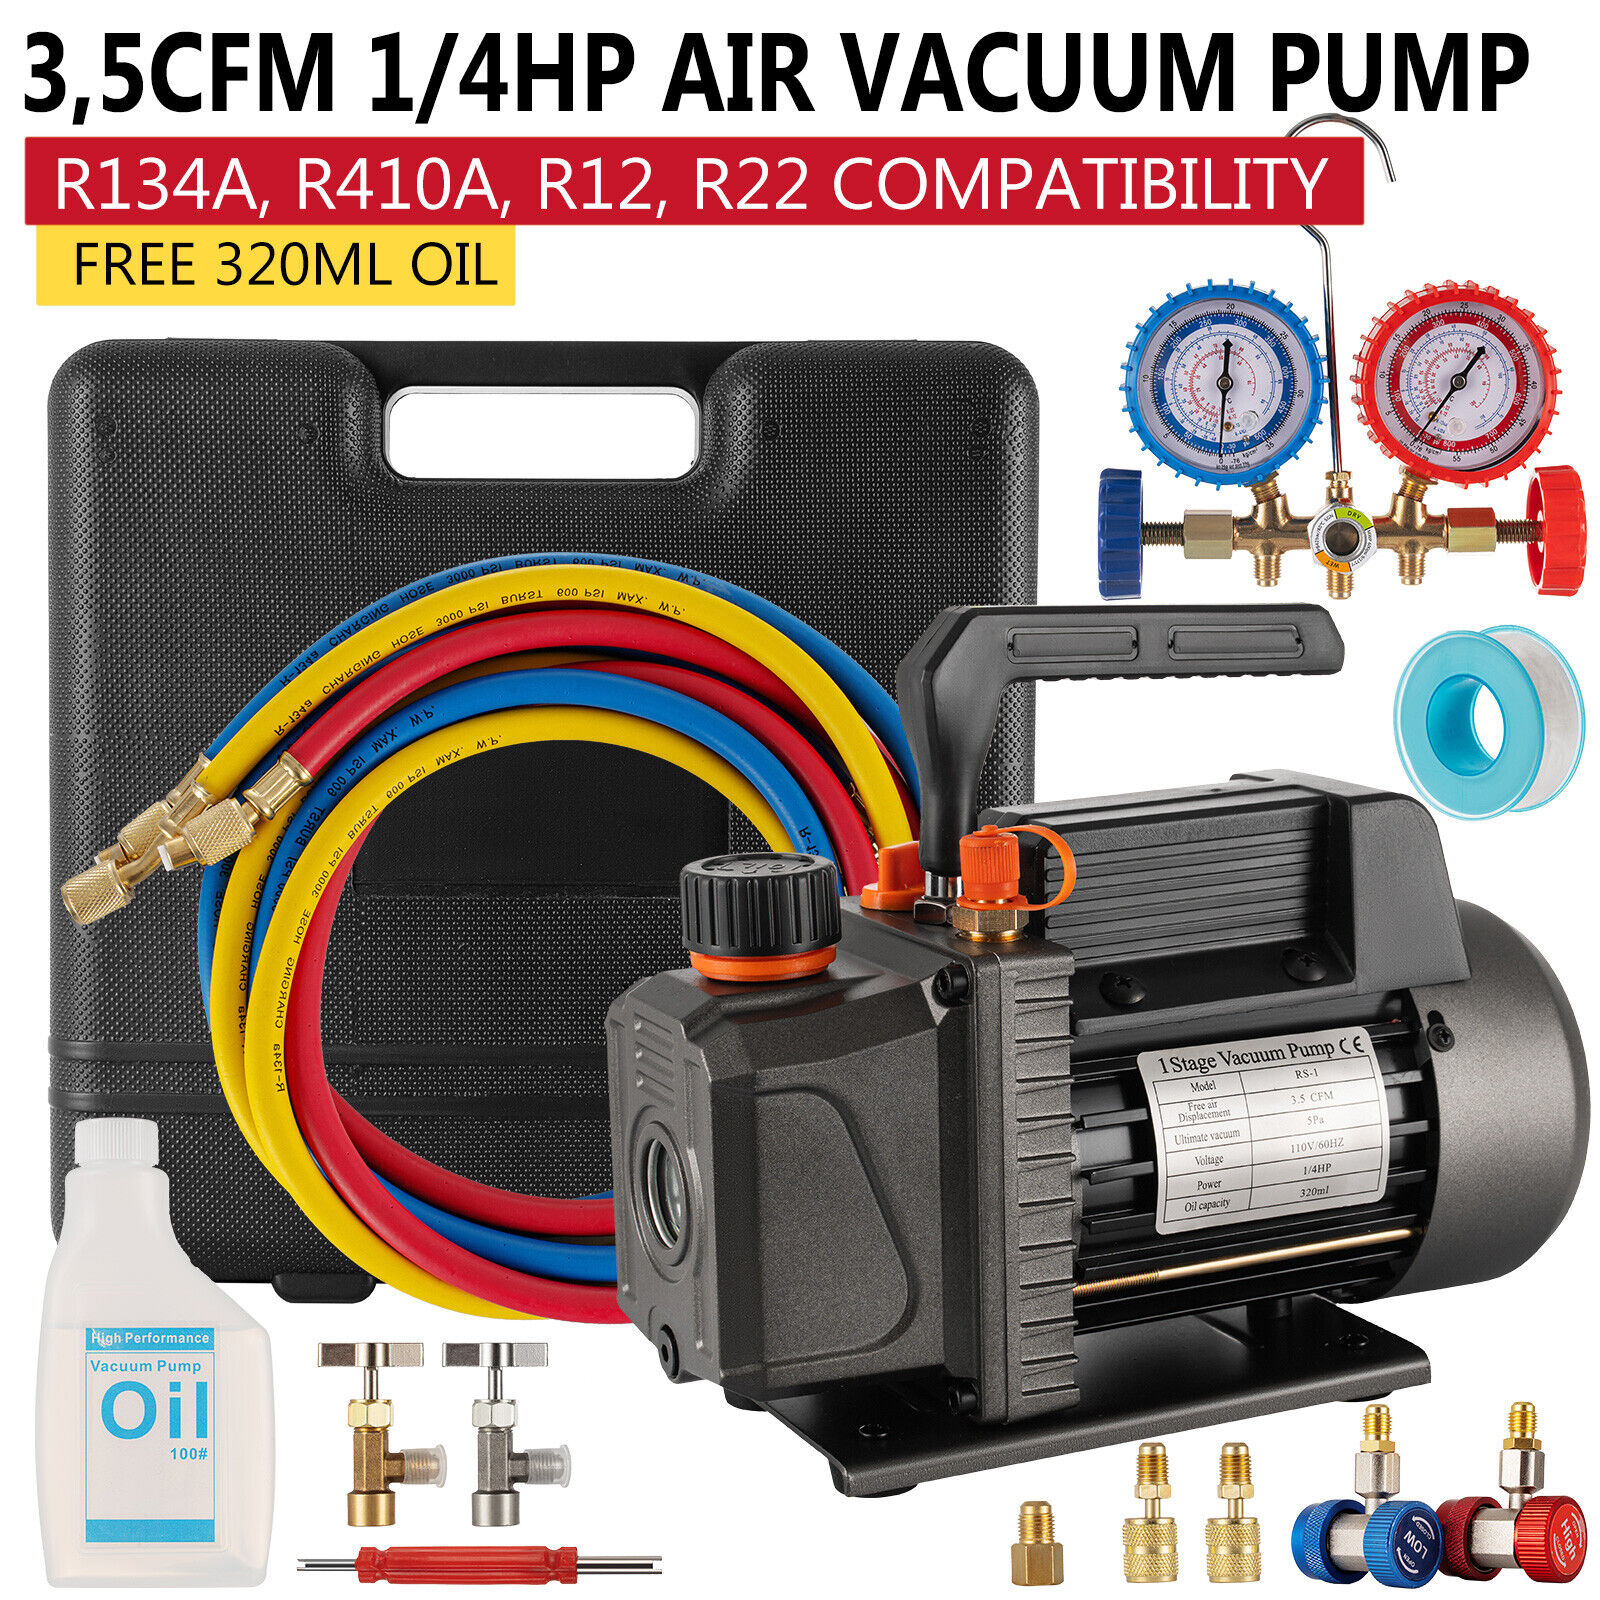 A/C Manifold Gauge Set R134A R410a R22 With 3,5 CFM 1/4HP Air Vacuum Pump W/ Oil